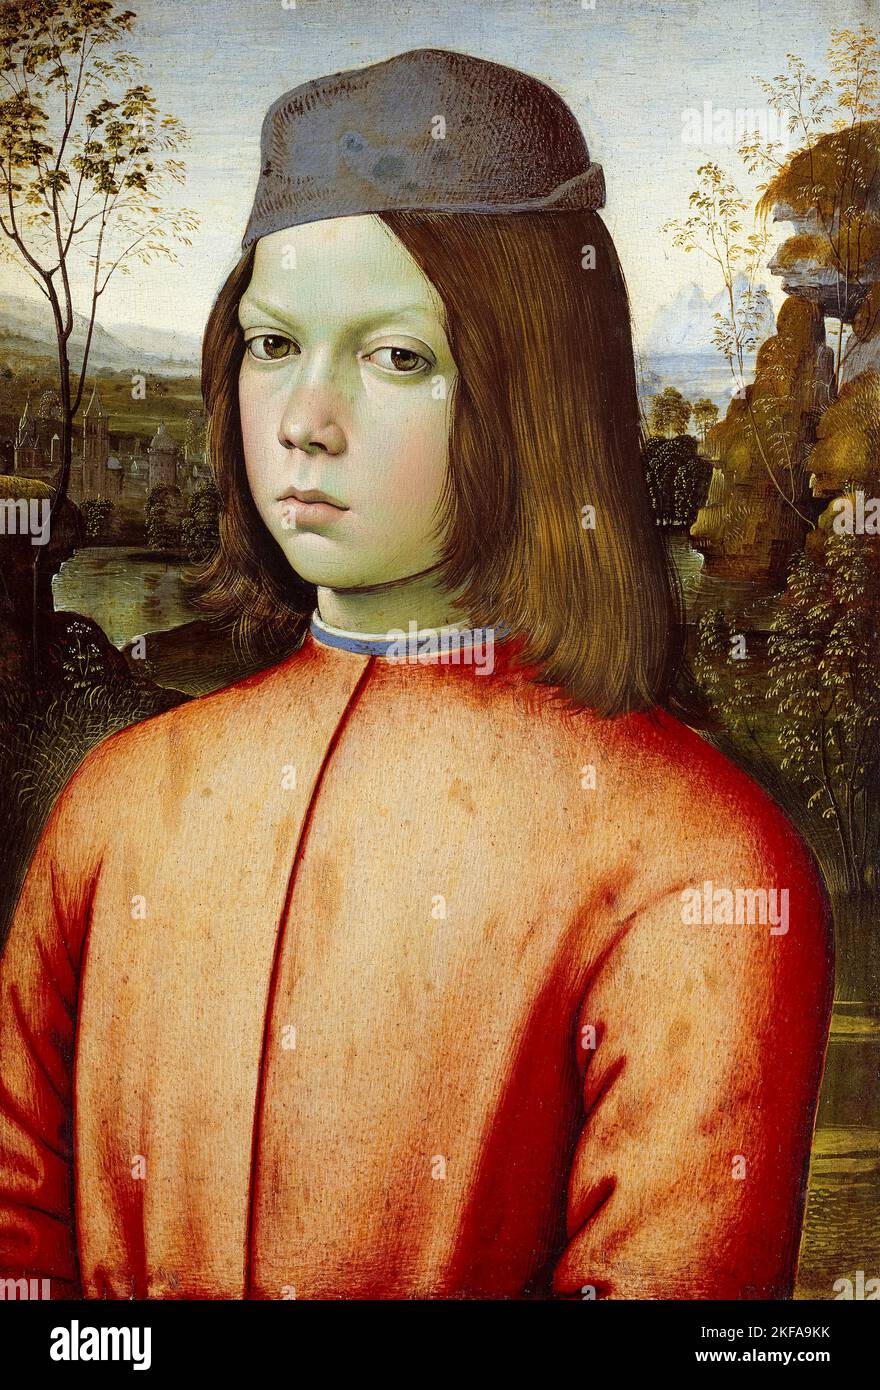 Pittura Pinturicchio, Ritratto di un ragazzo, olio su tavola, prima del 1513 Foto Stock